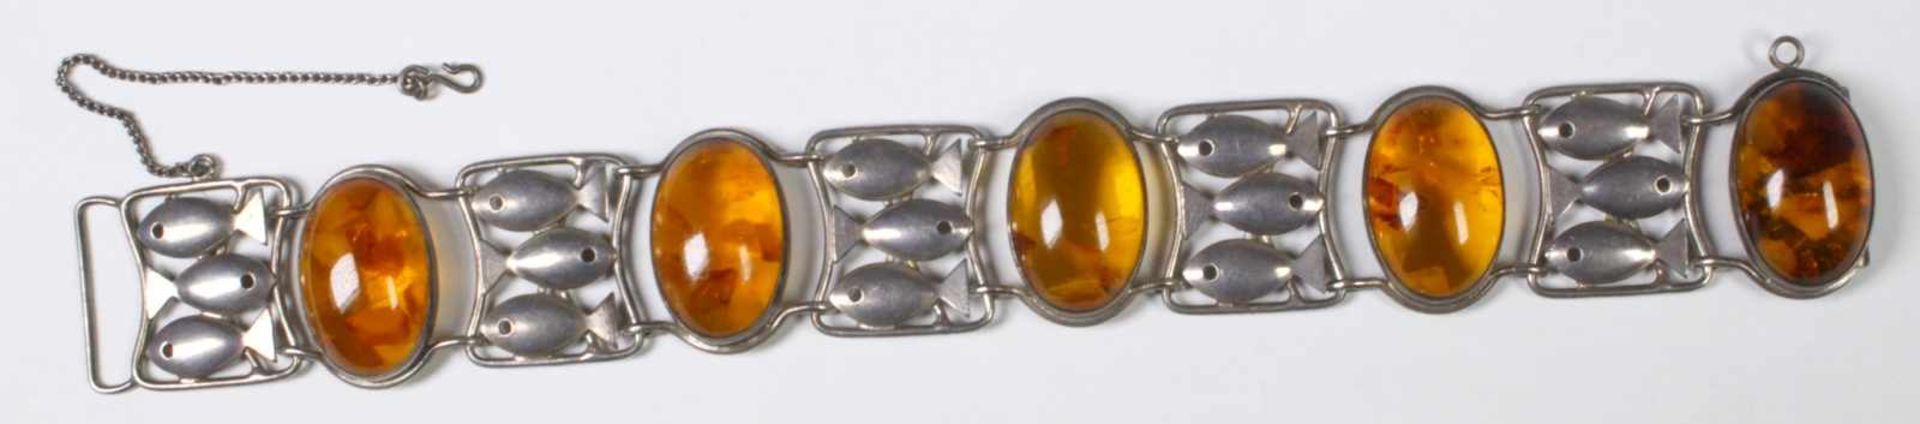 Armband, dt., Mitte 20. Jh., Silber 835, Facon: Phantasie, besetzt mitBernstein-Cabochons,